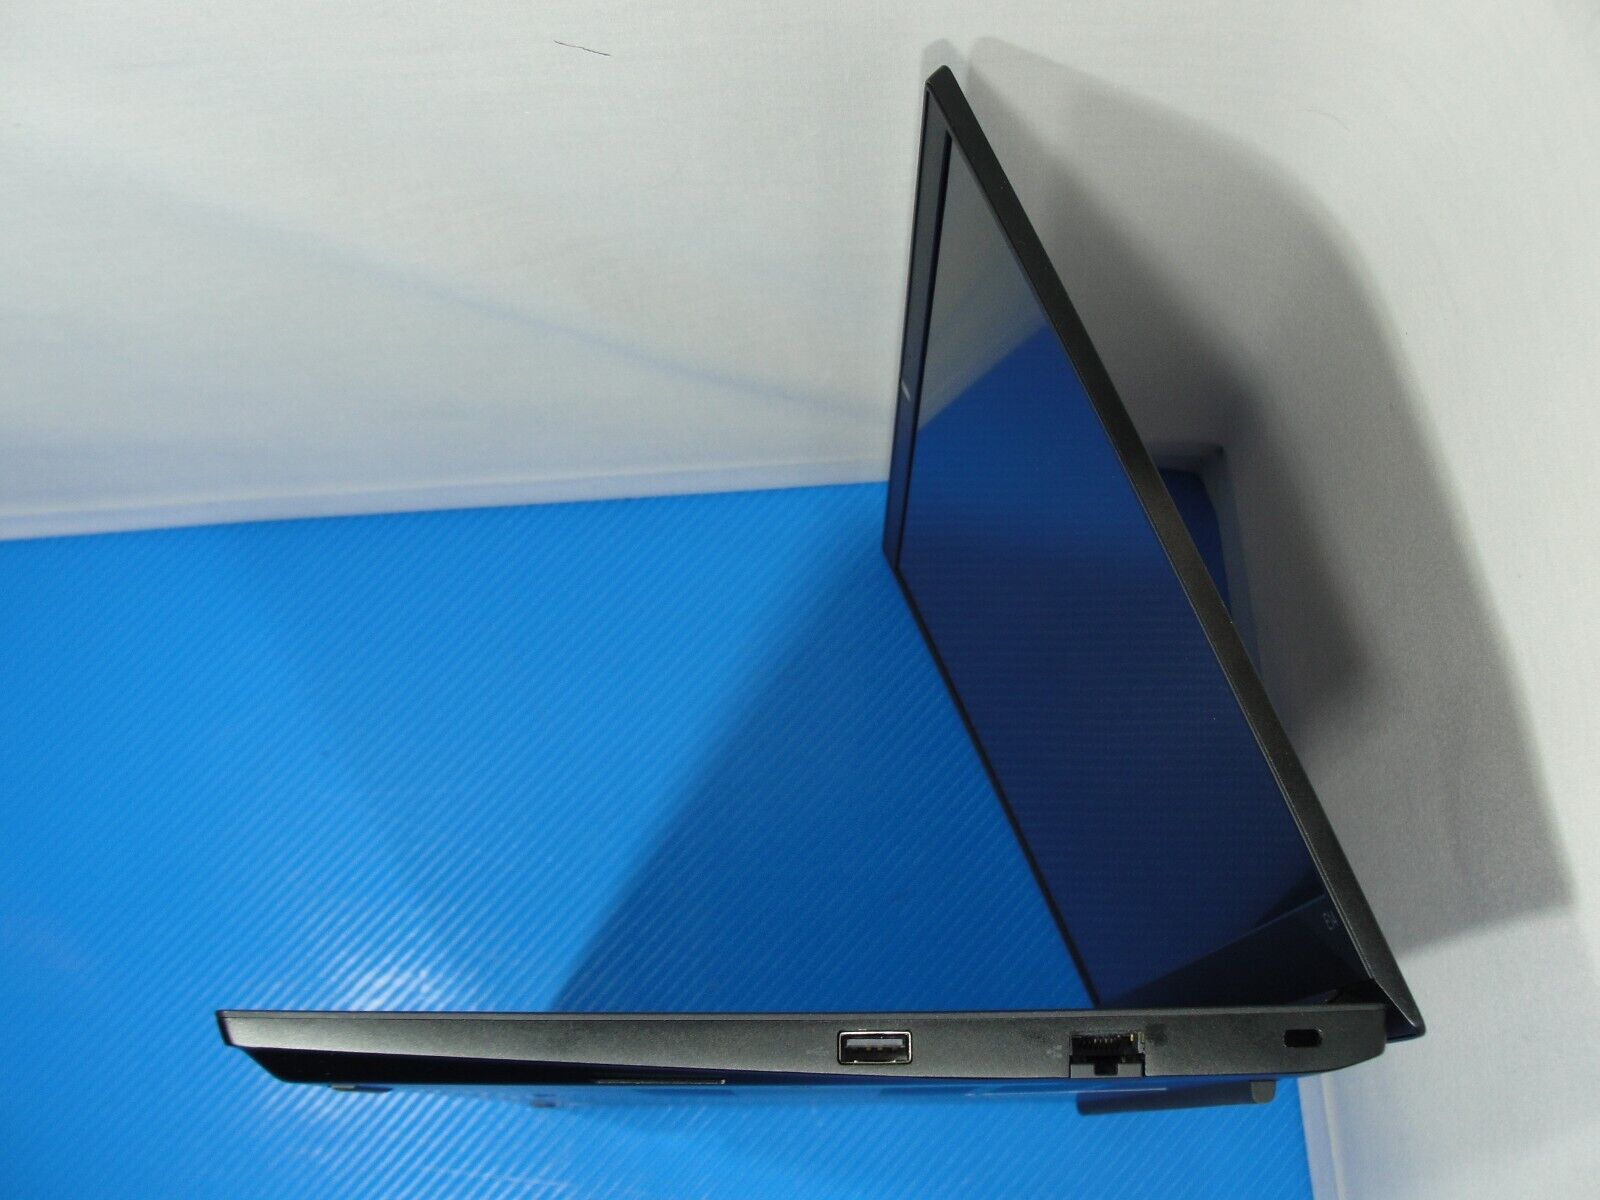 Lenovo Thinkpad E14 G2 Laptop i5-1135G7 8GB 256GB SSD Battery 5 cycles Warranty